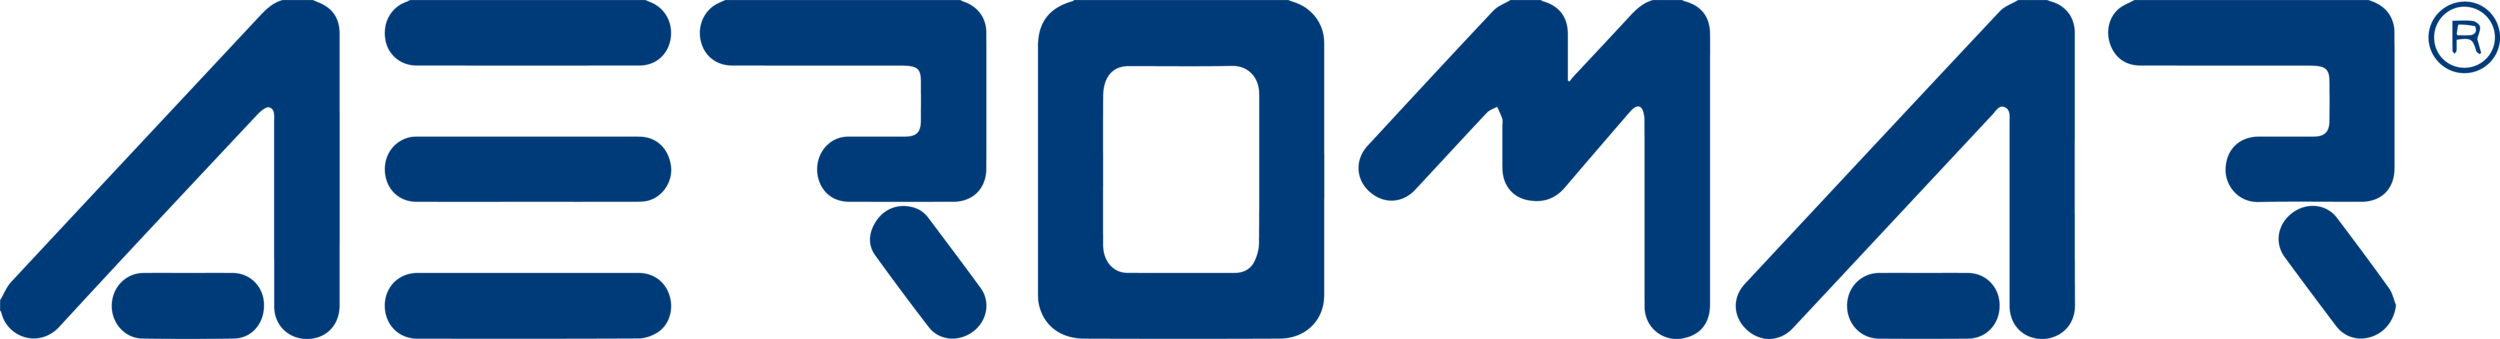 Aeromar_Logo.png